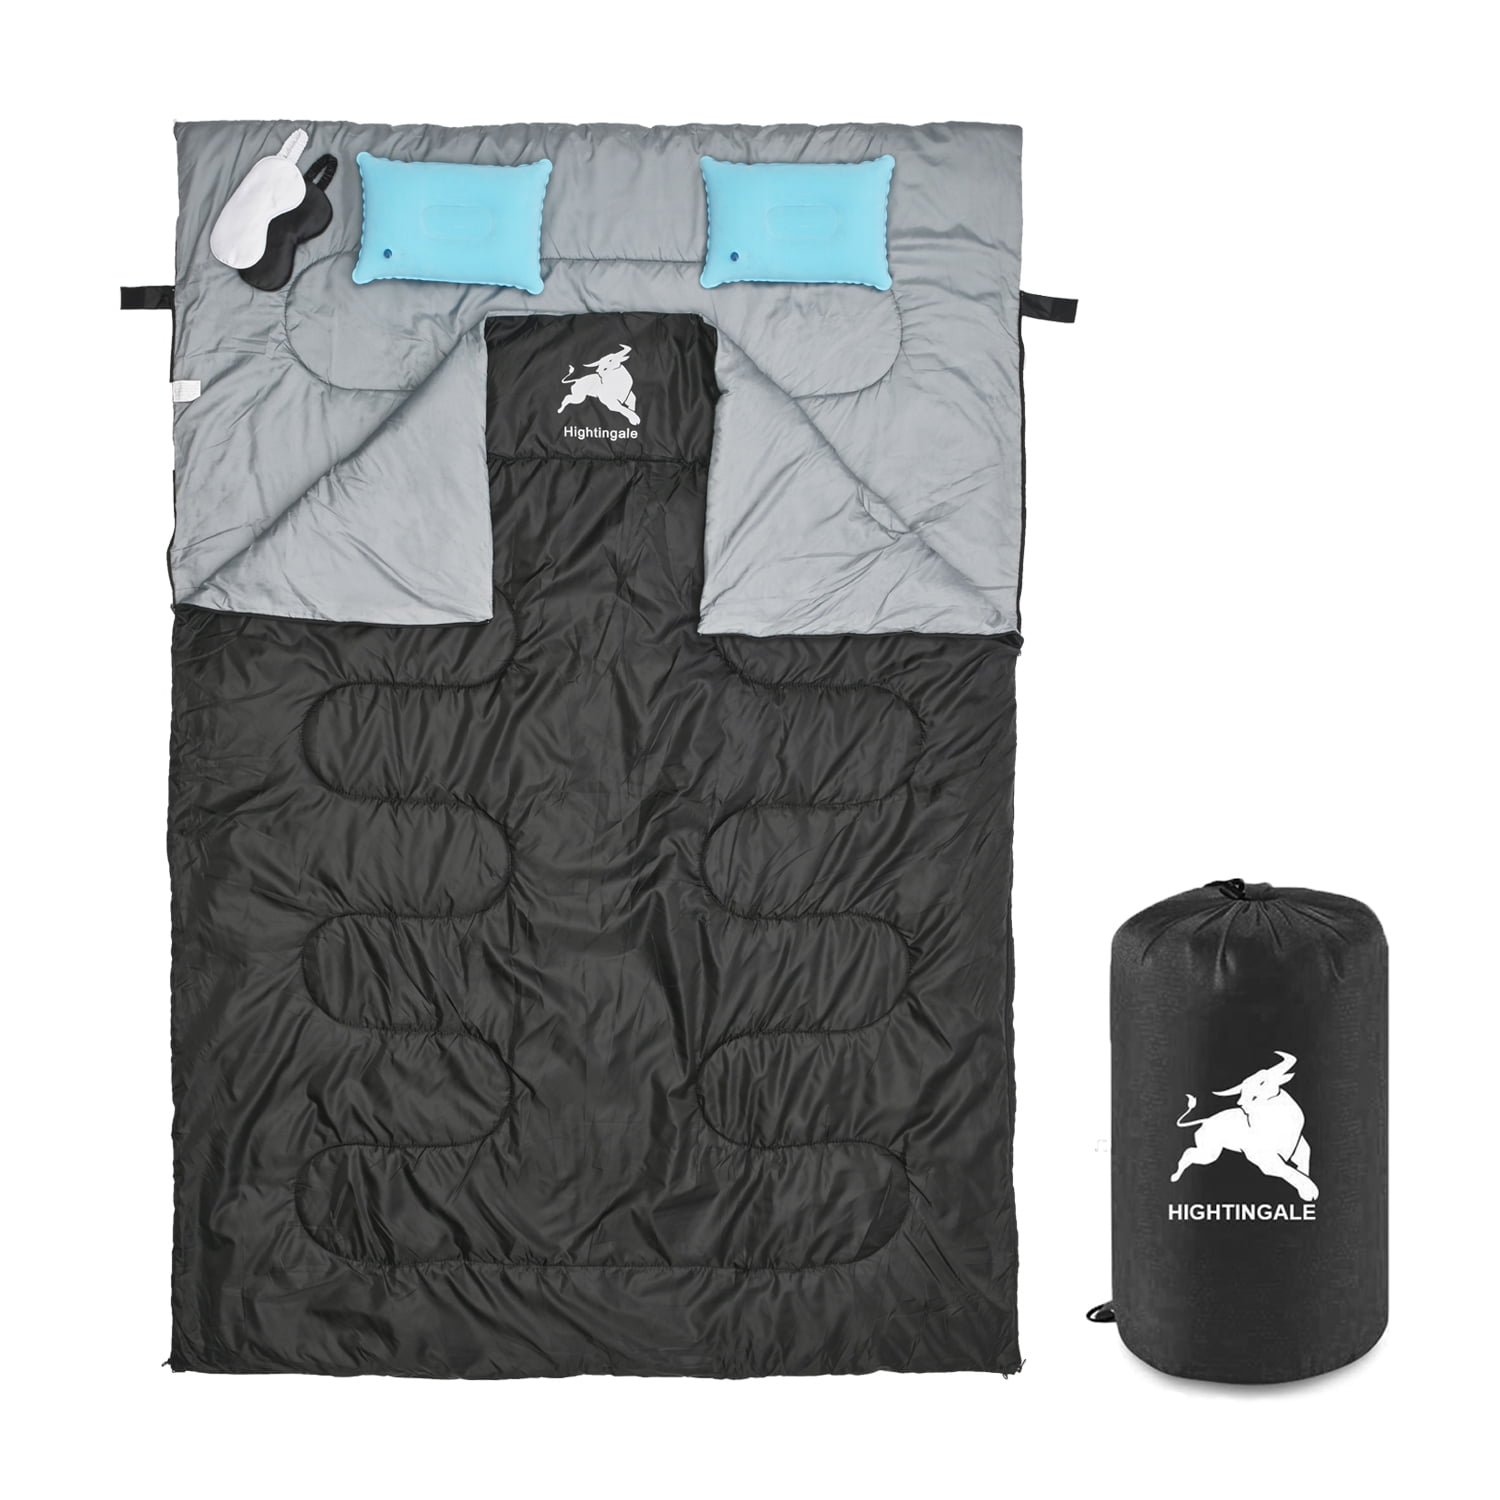 AYAOQIANG Double Sleeping Bag for Adult, Waterproof Sleeping Bag with 2 ...